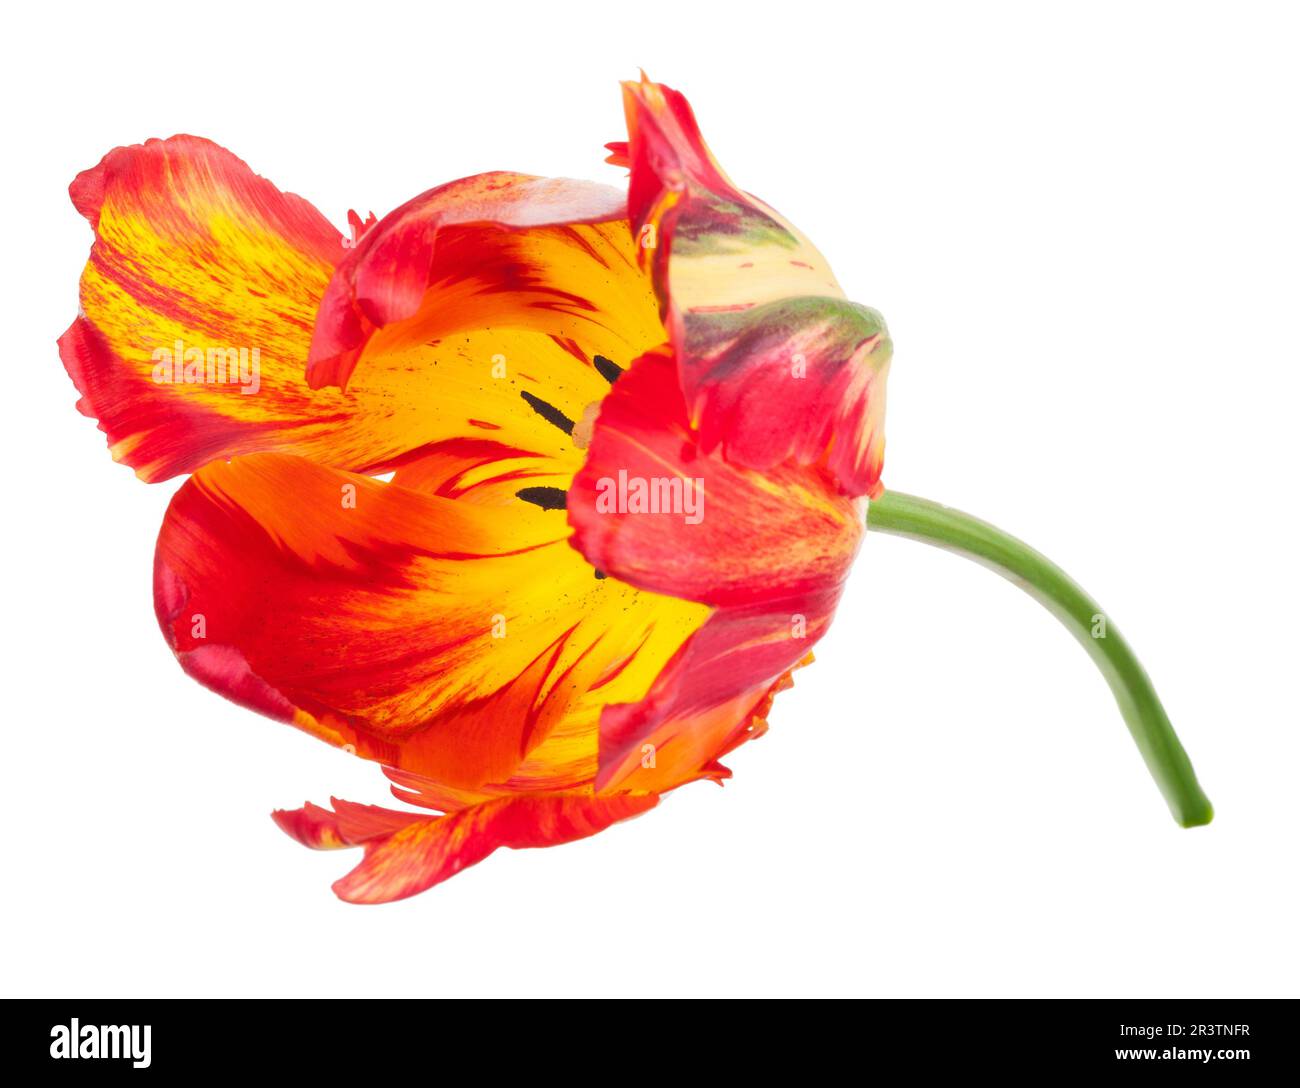 Tulip on white Stock Photo